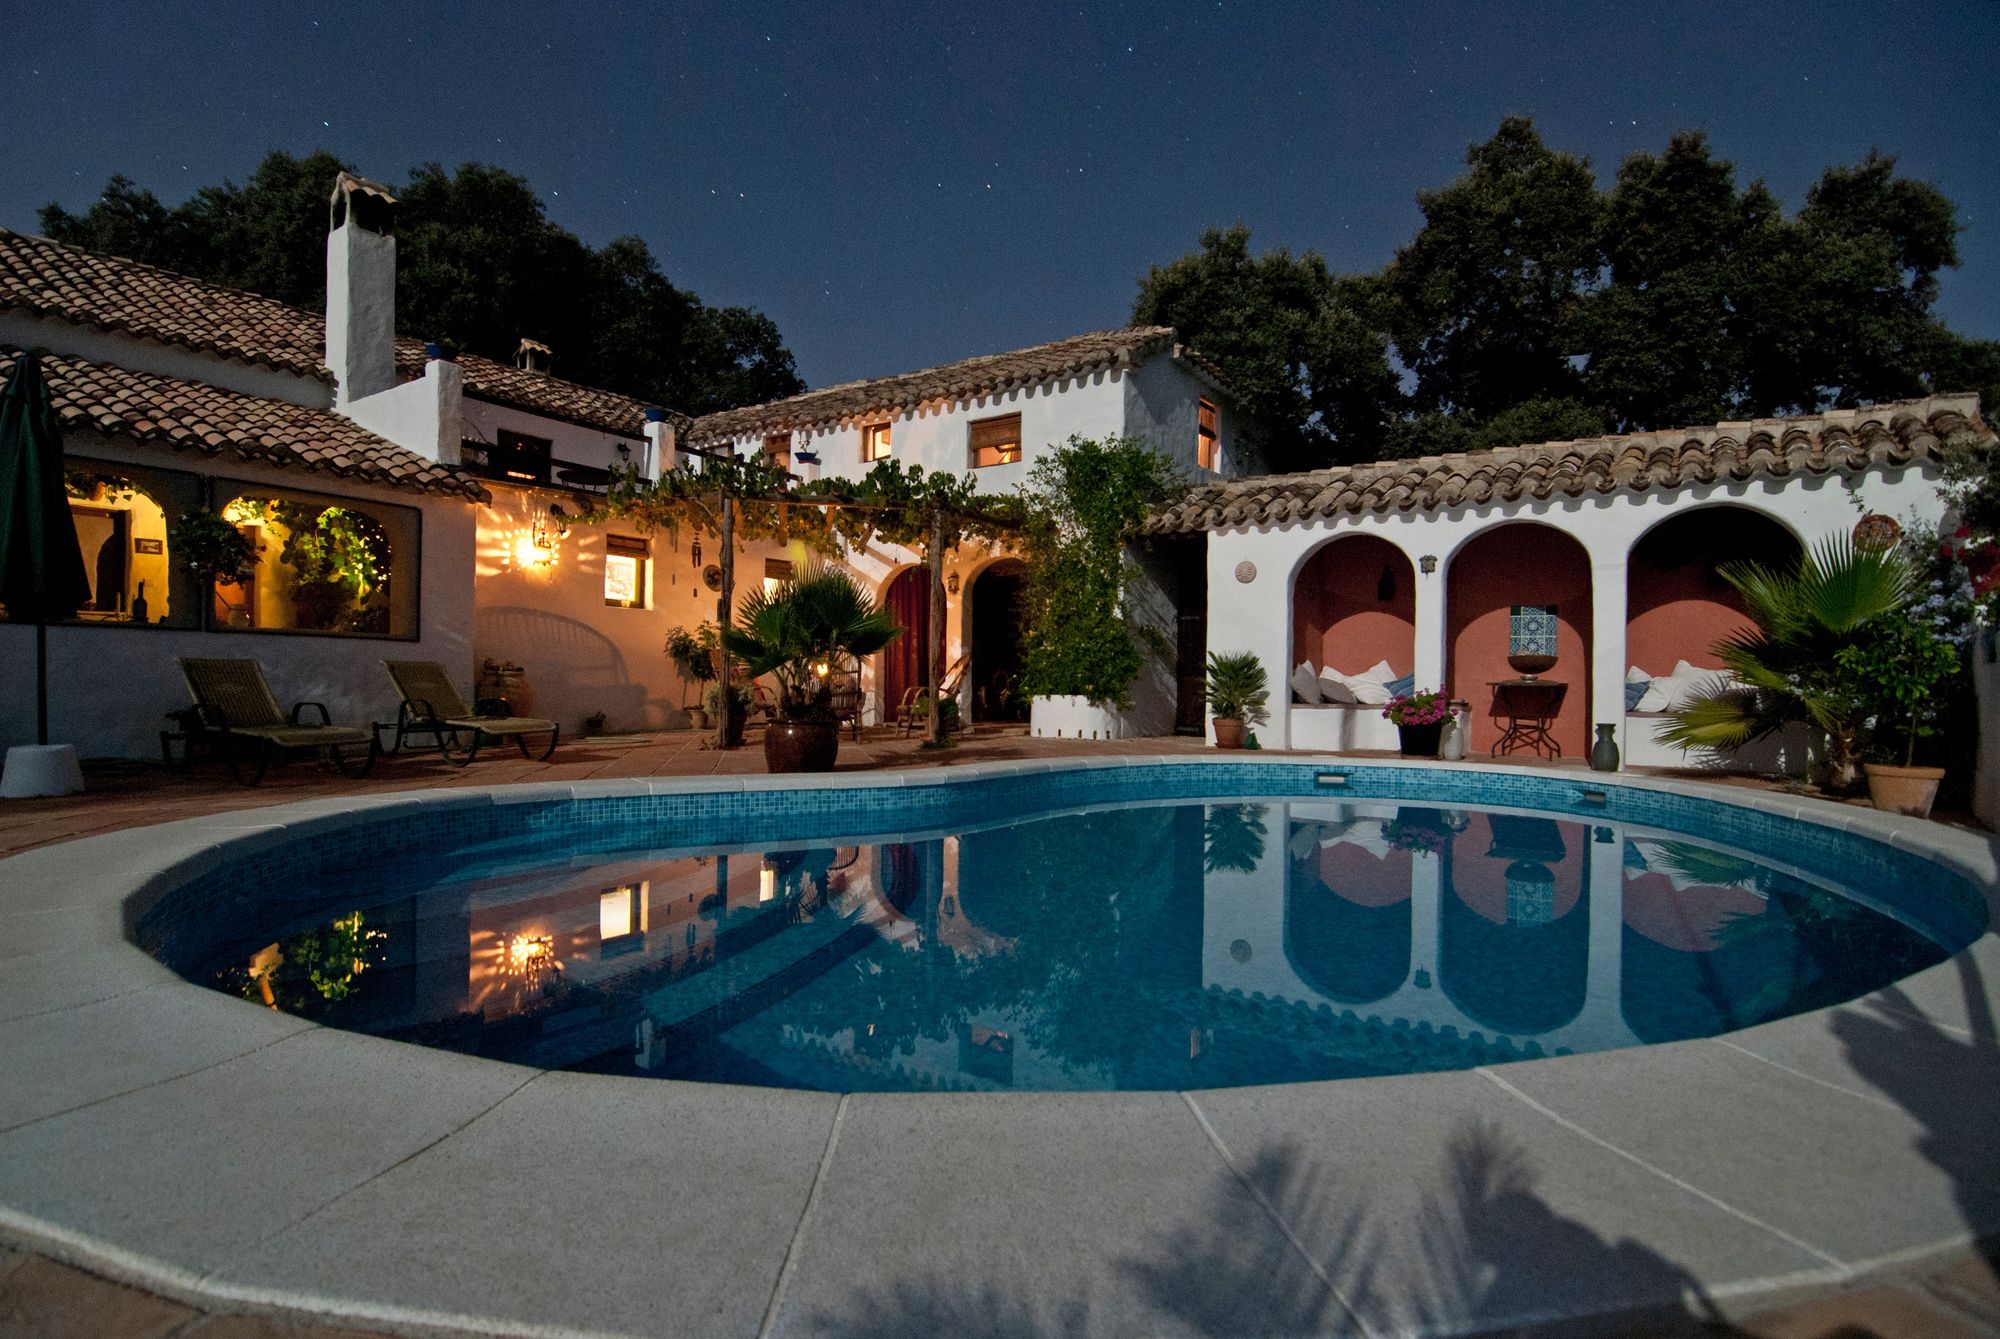 Diseño de casas de una planta con planos modernos con piscina, casa de estilo español mediterráneo